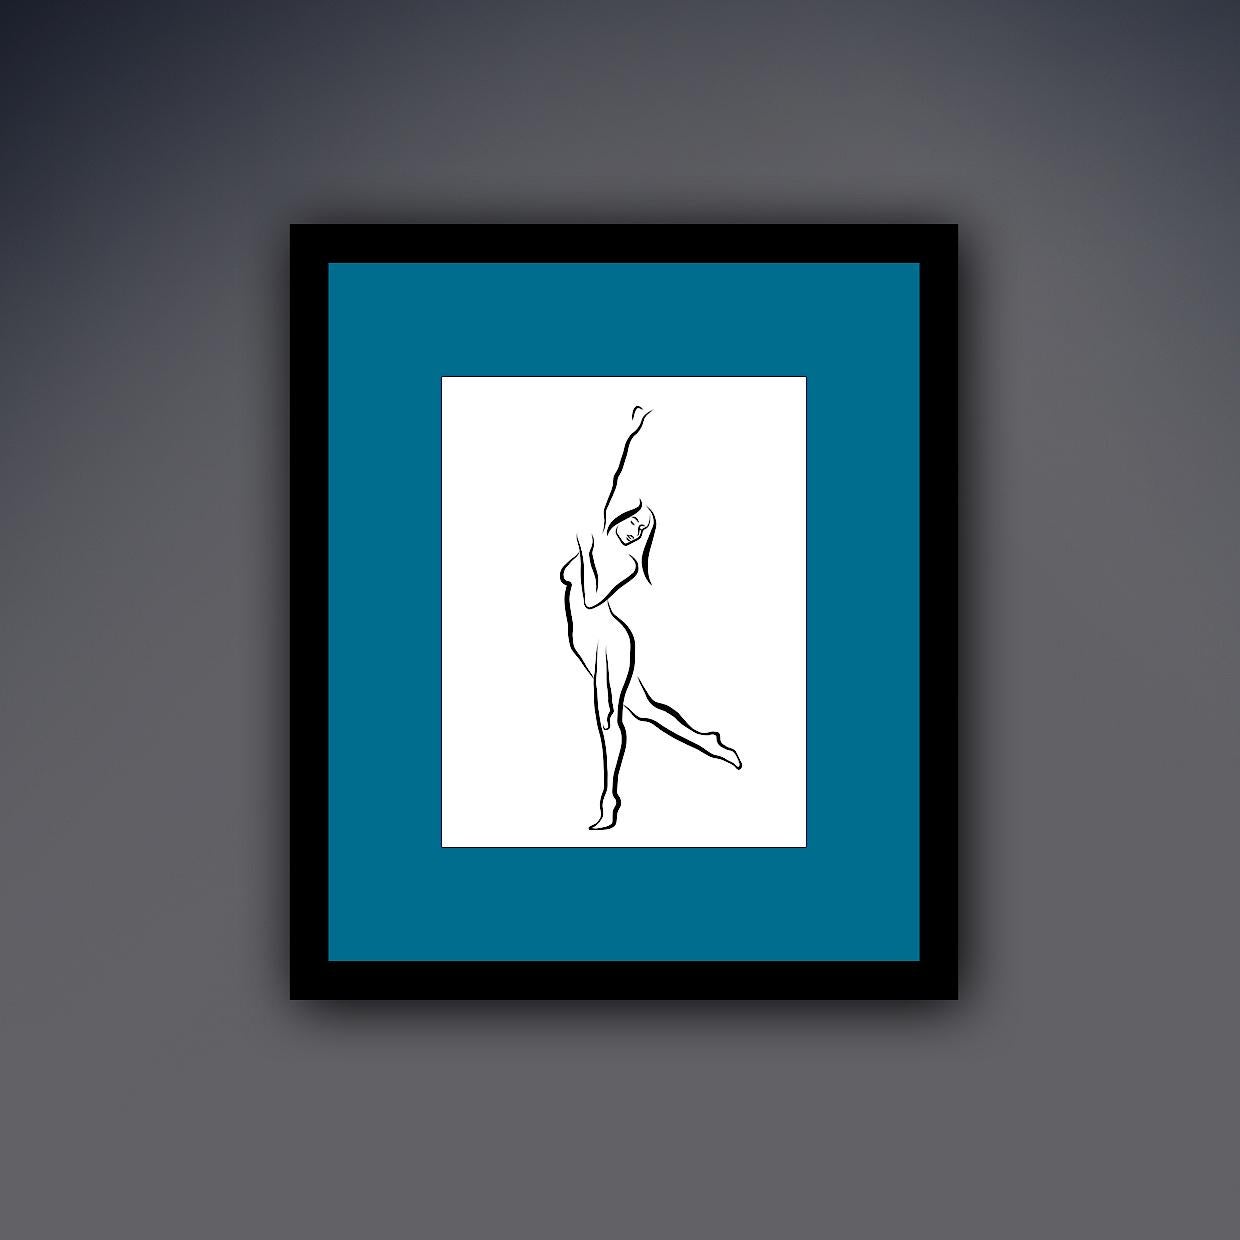 Haiku n° 24, 1/50 - Drawing numérique représentant une femme nue dansant, bras levés - Contemporain Print par Michael Binkley